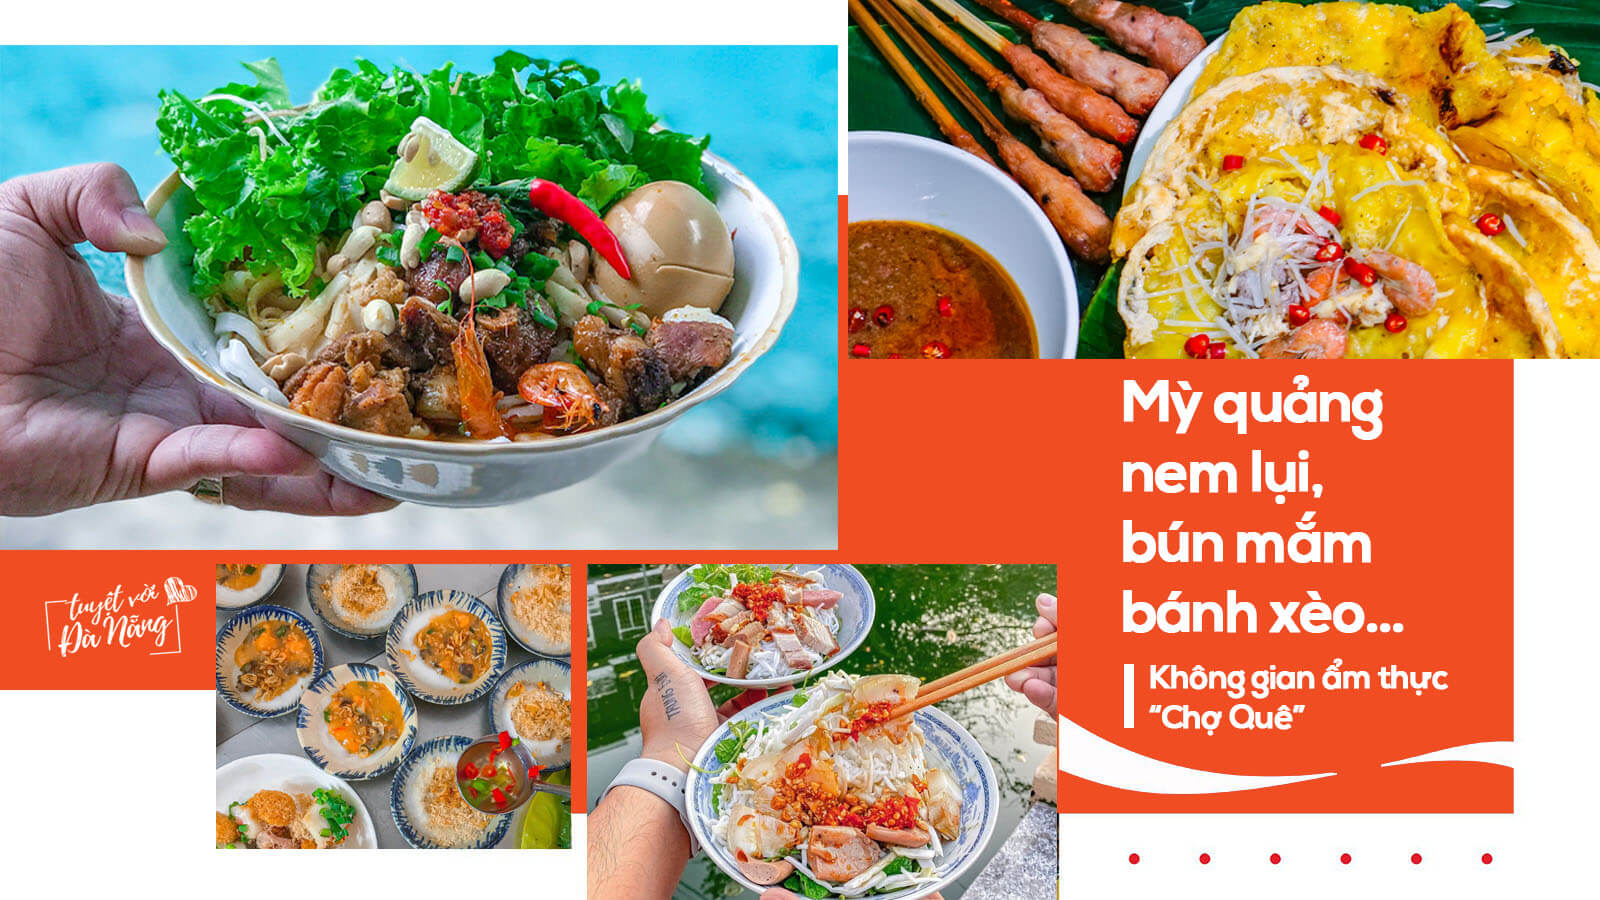 Chương trình livestream “Măm măm Đà Nẵng” được phát trực tiếp trên mạng xã hội facebook và tiktok nhằm hướng dẫn cách thức chế biến các món ăn đặc trưng Đà Nẵng. (Nguồn ảnh: danangfantasticity.com)